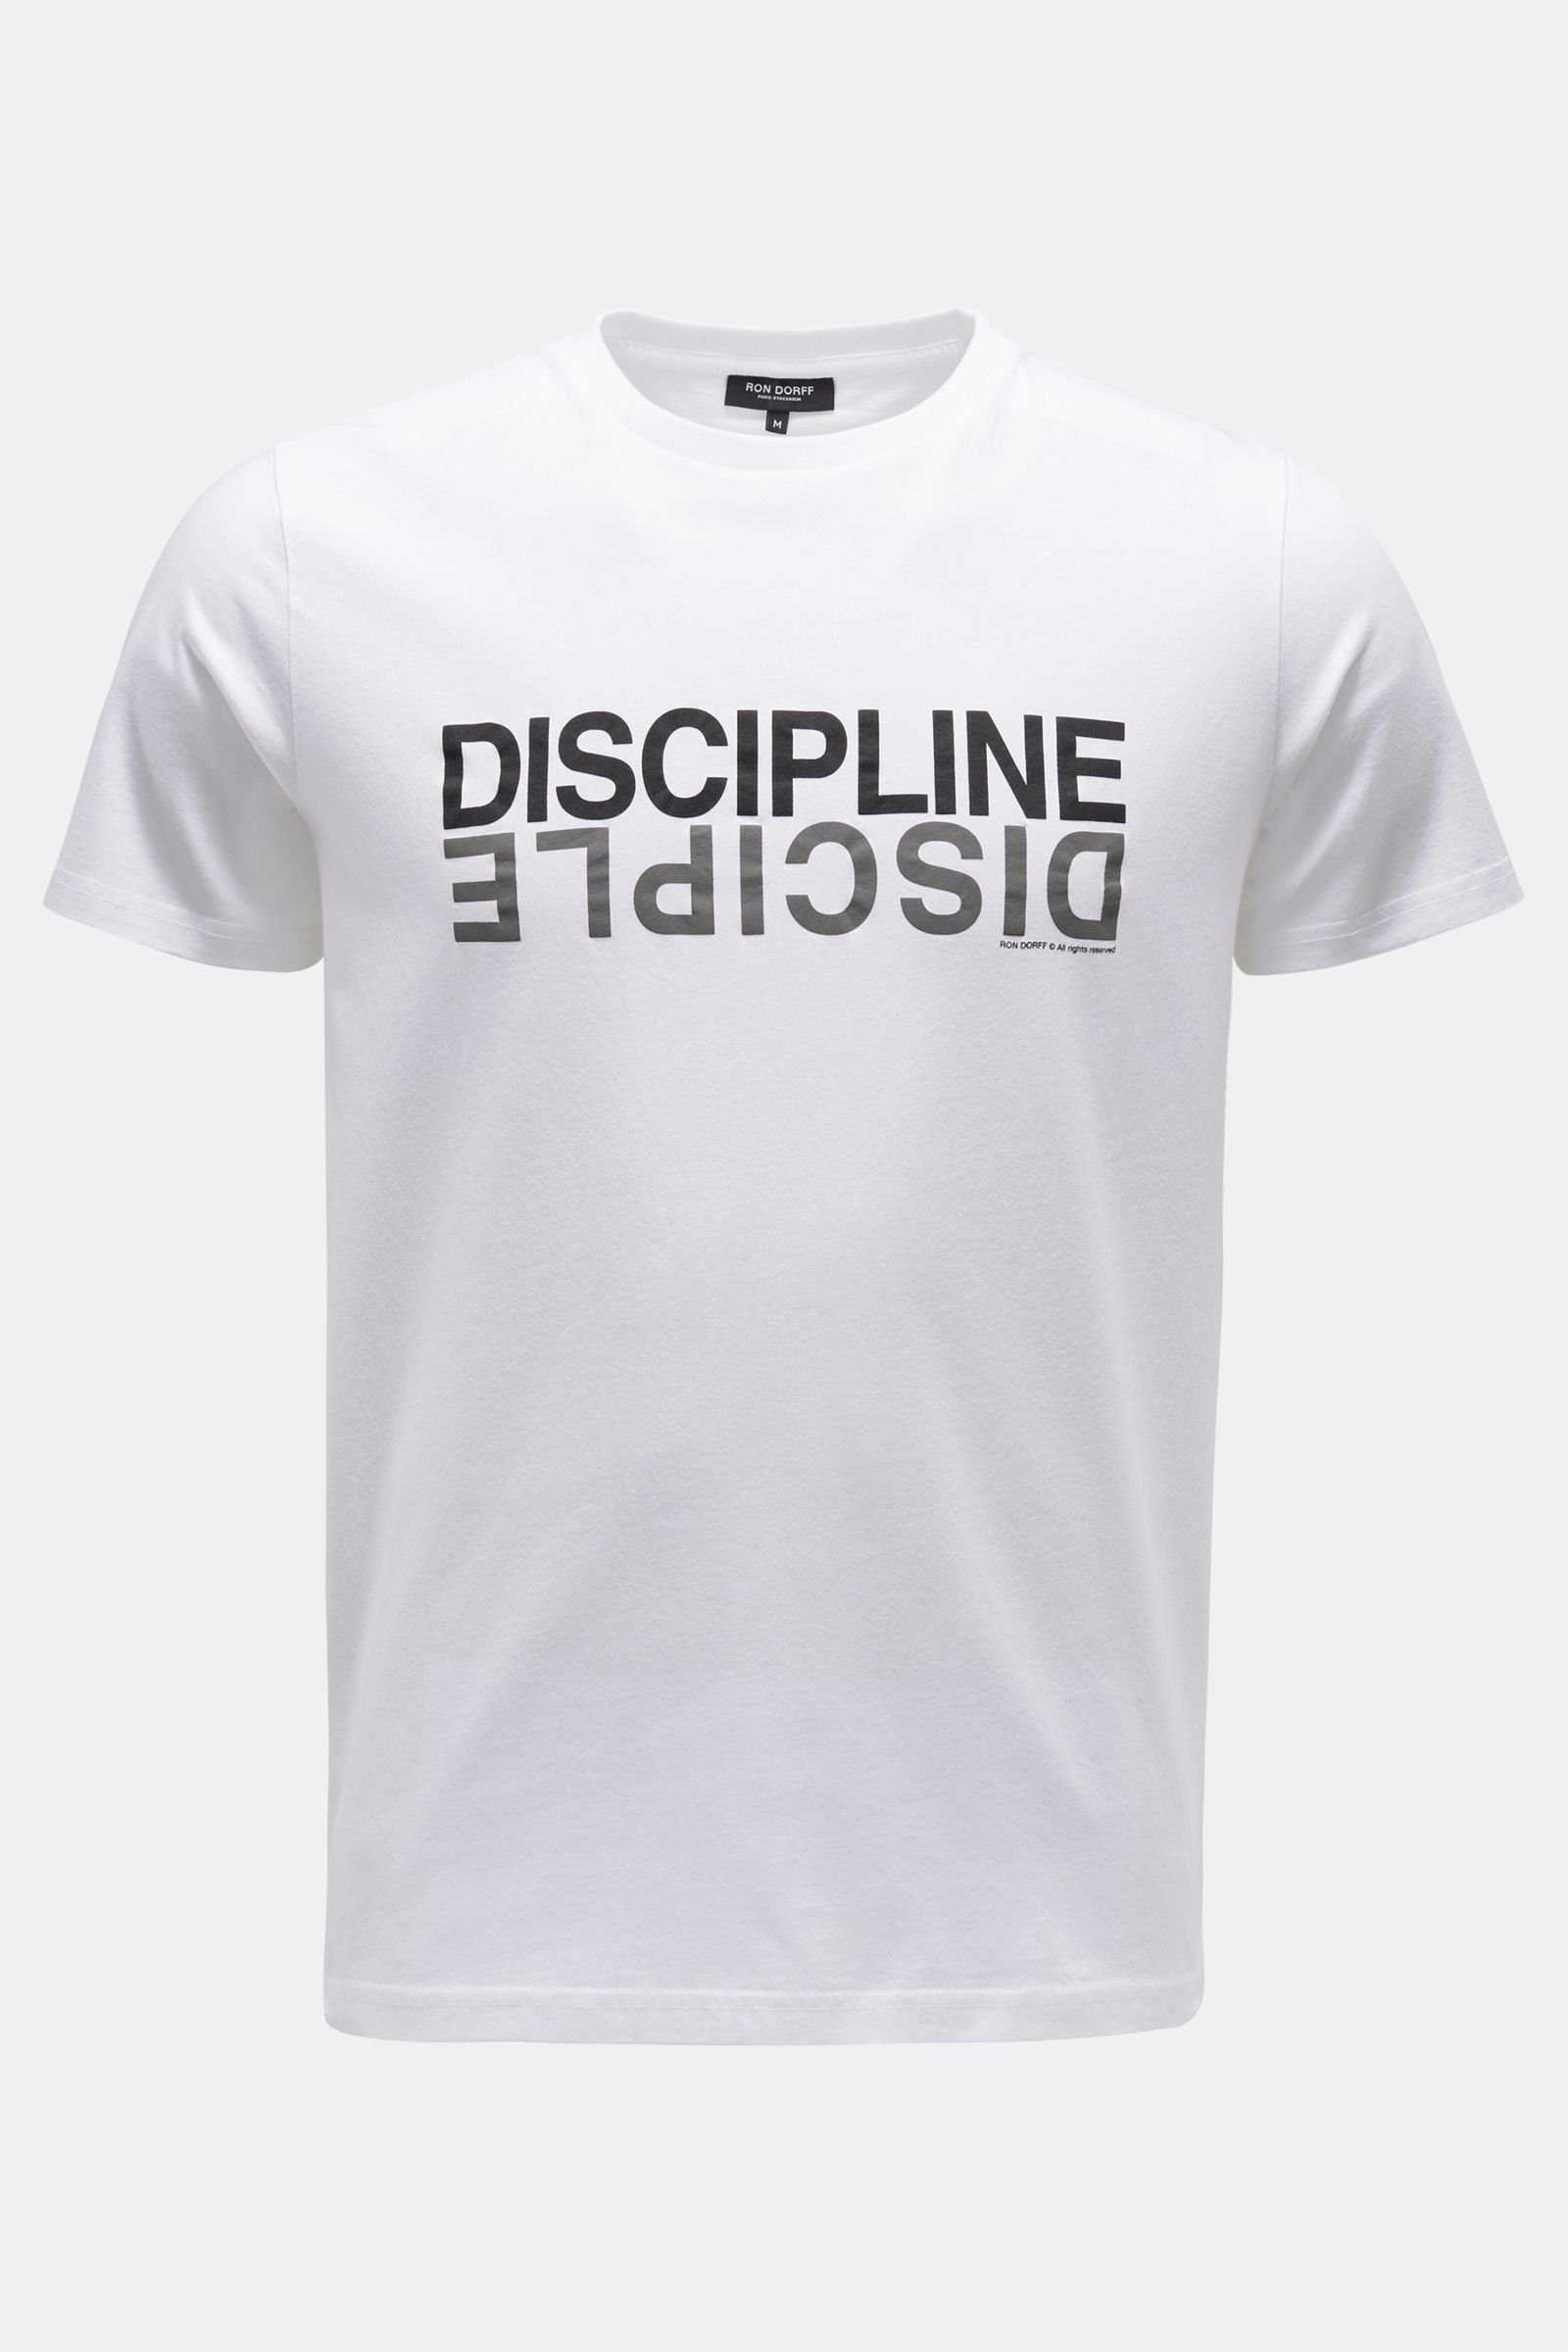 Rundhals-T-Shirt 'Discipline' weiß